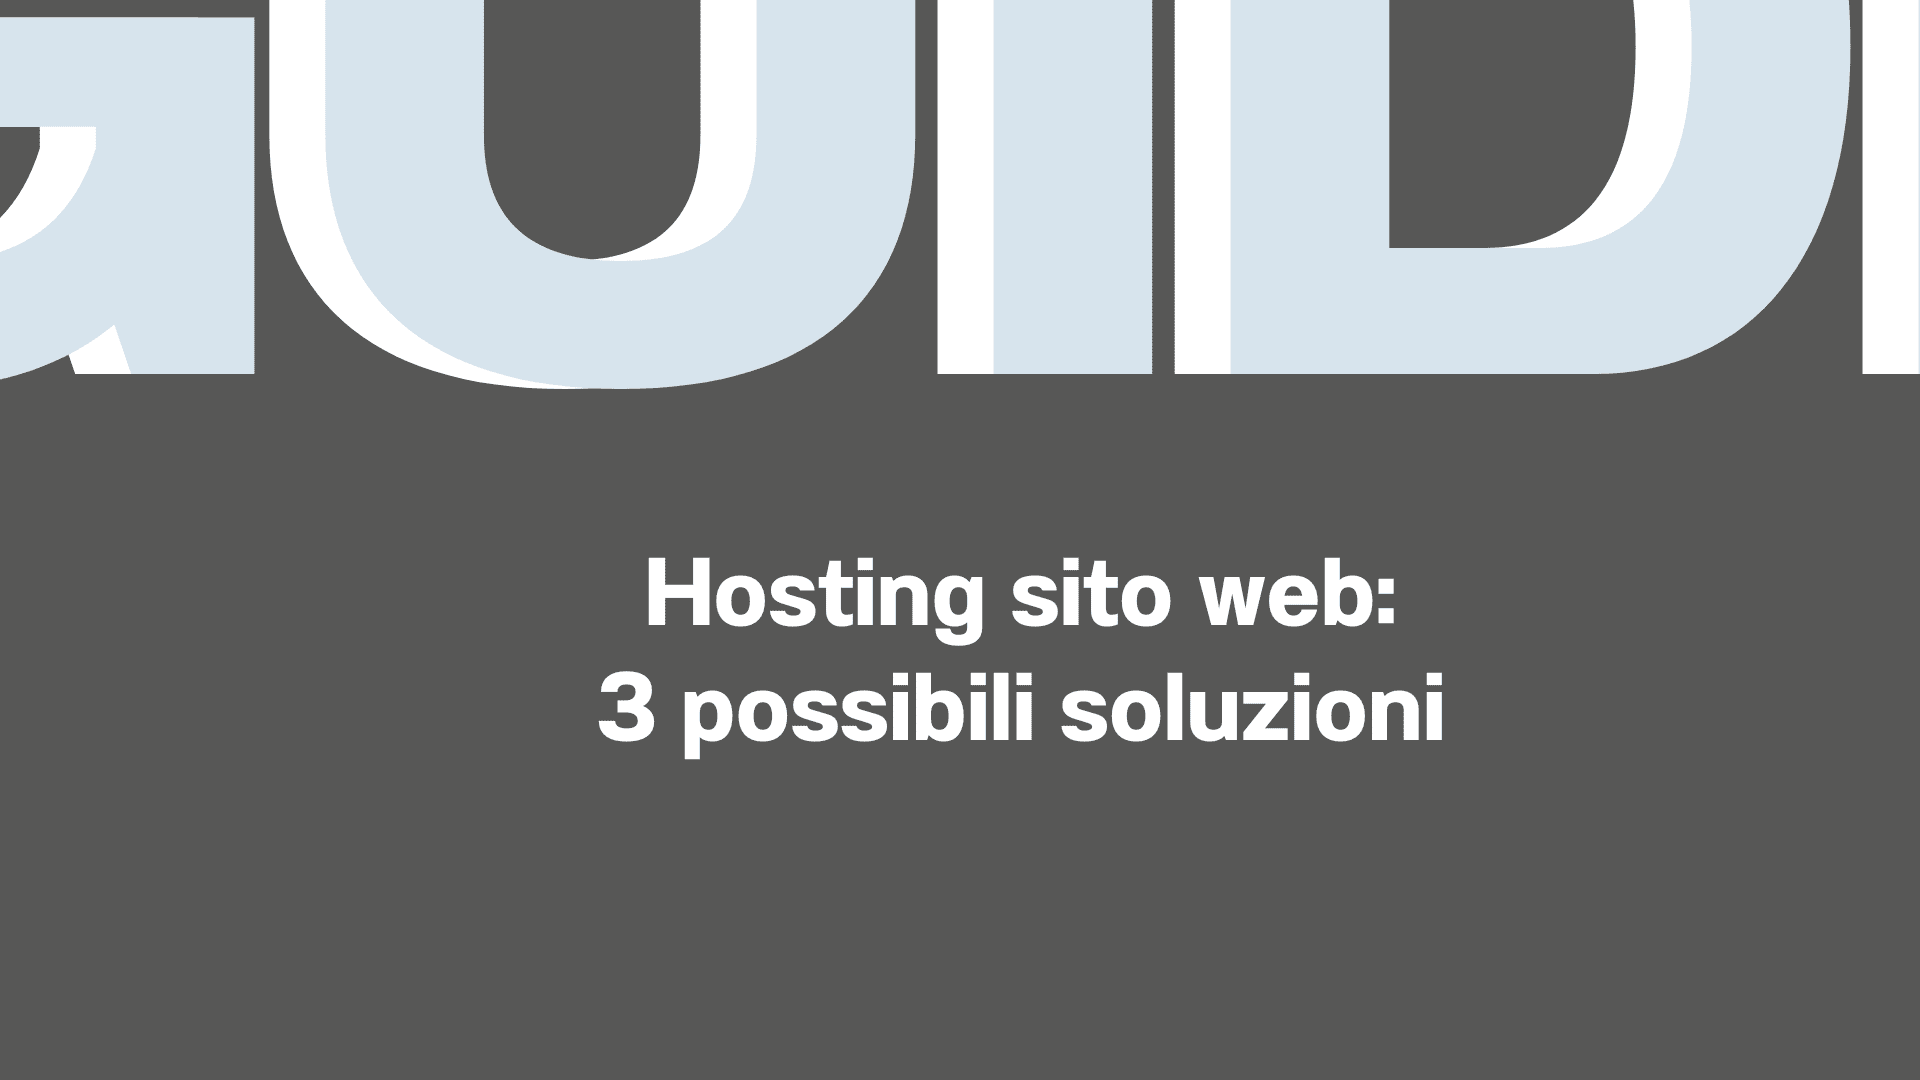 sito web hosting 3 possibili soluzioni